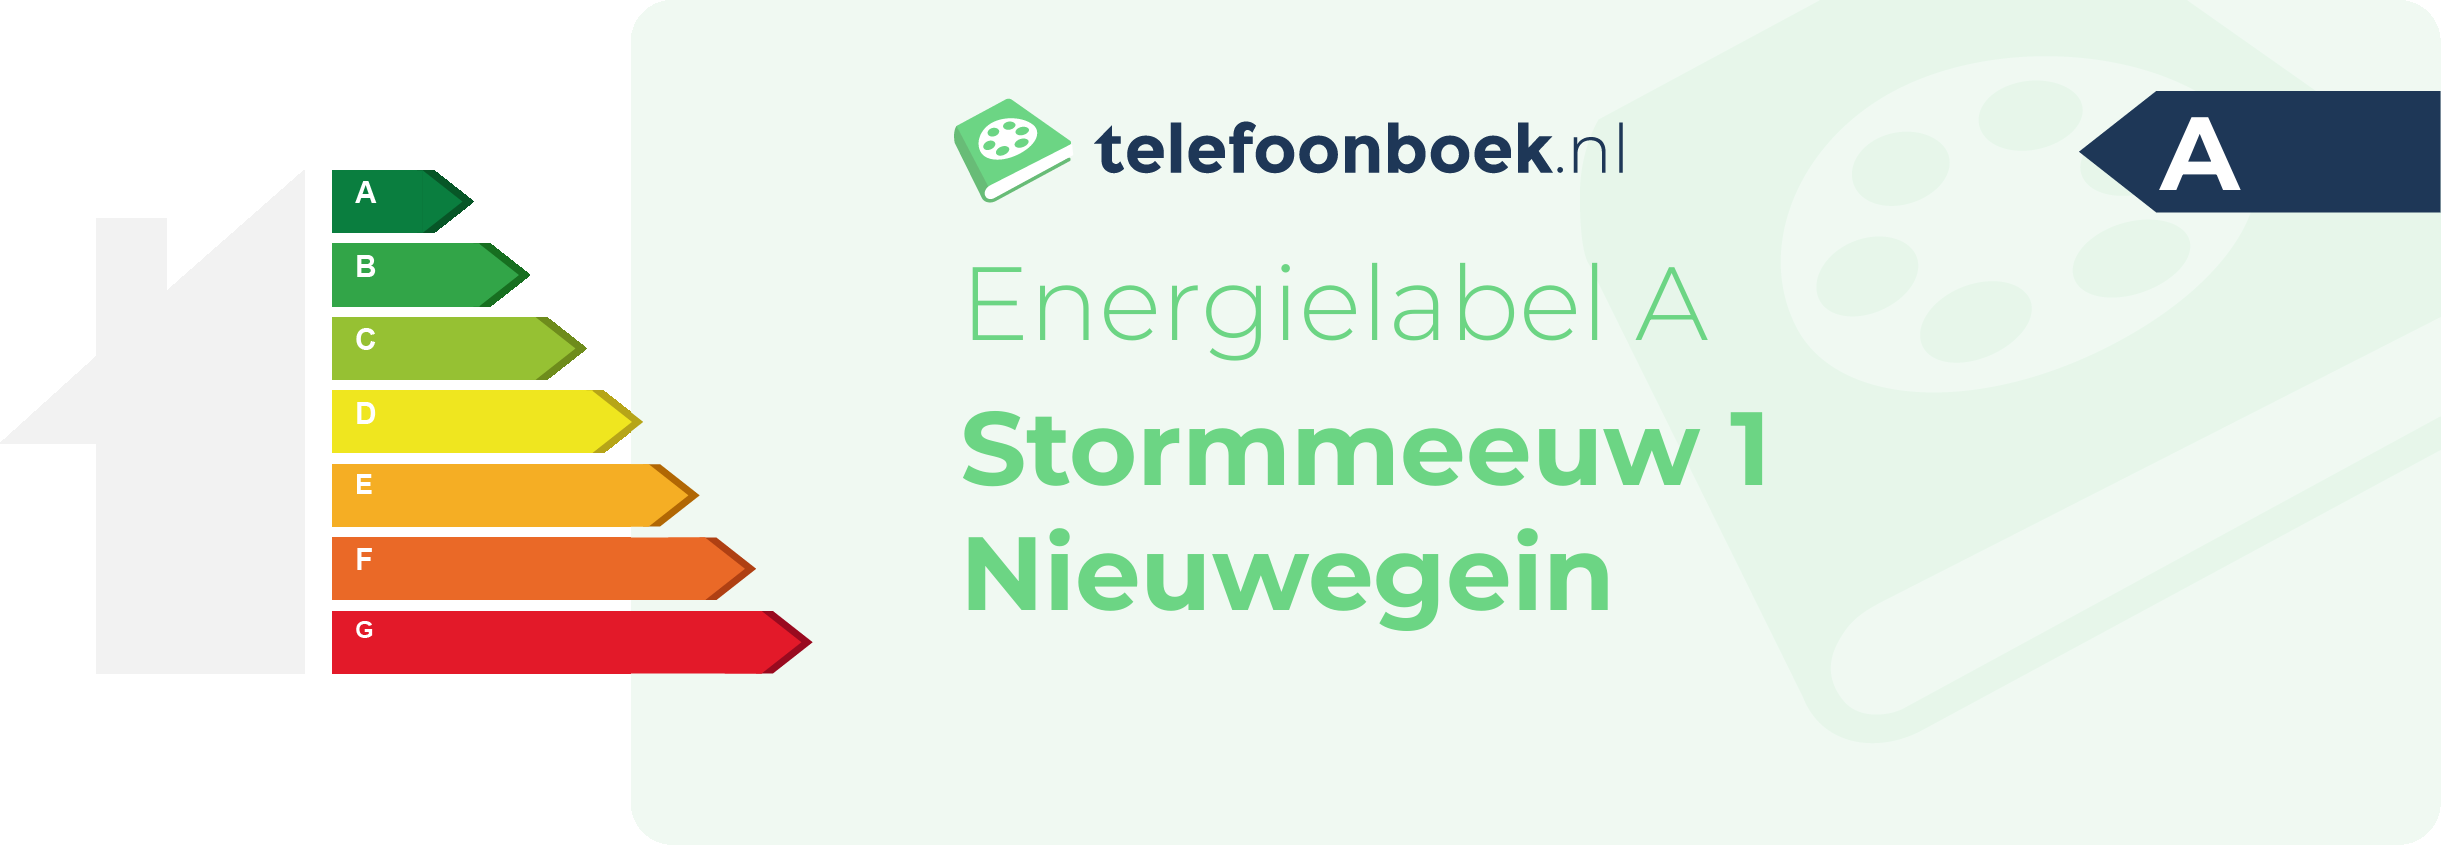 Energielabel Stormmeeuw 1 Nieuwegein